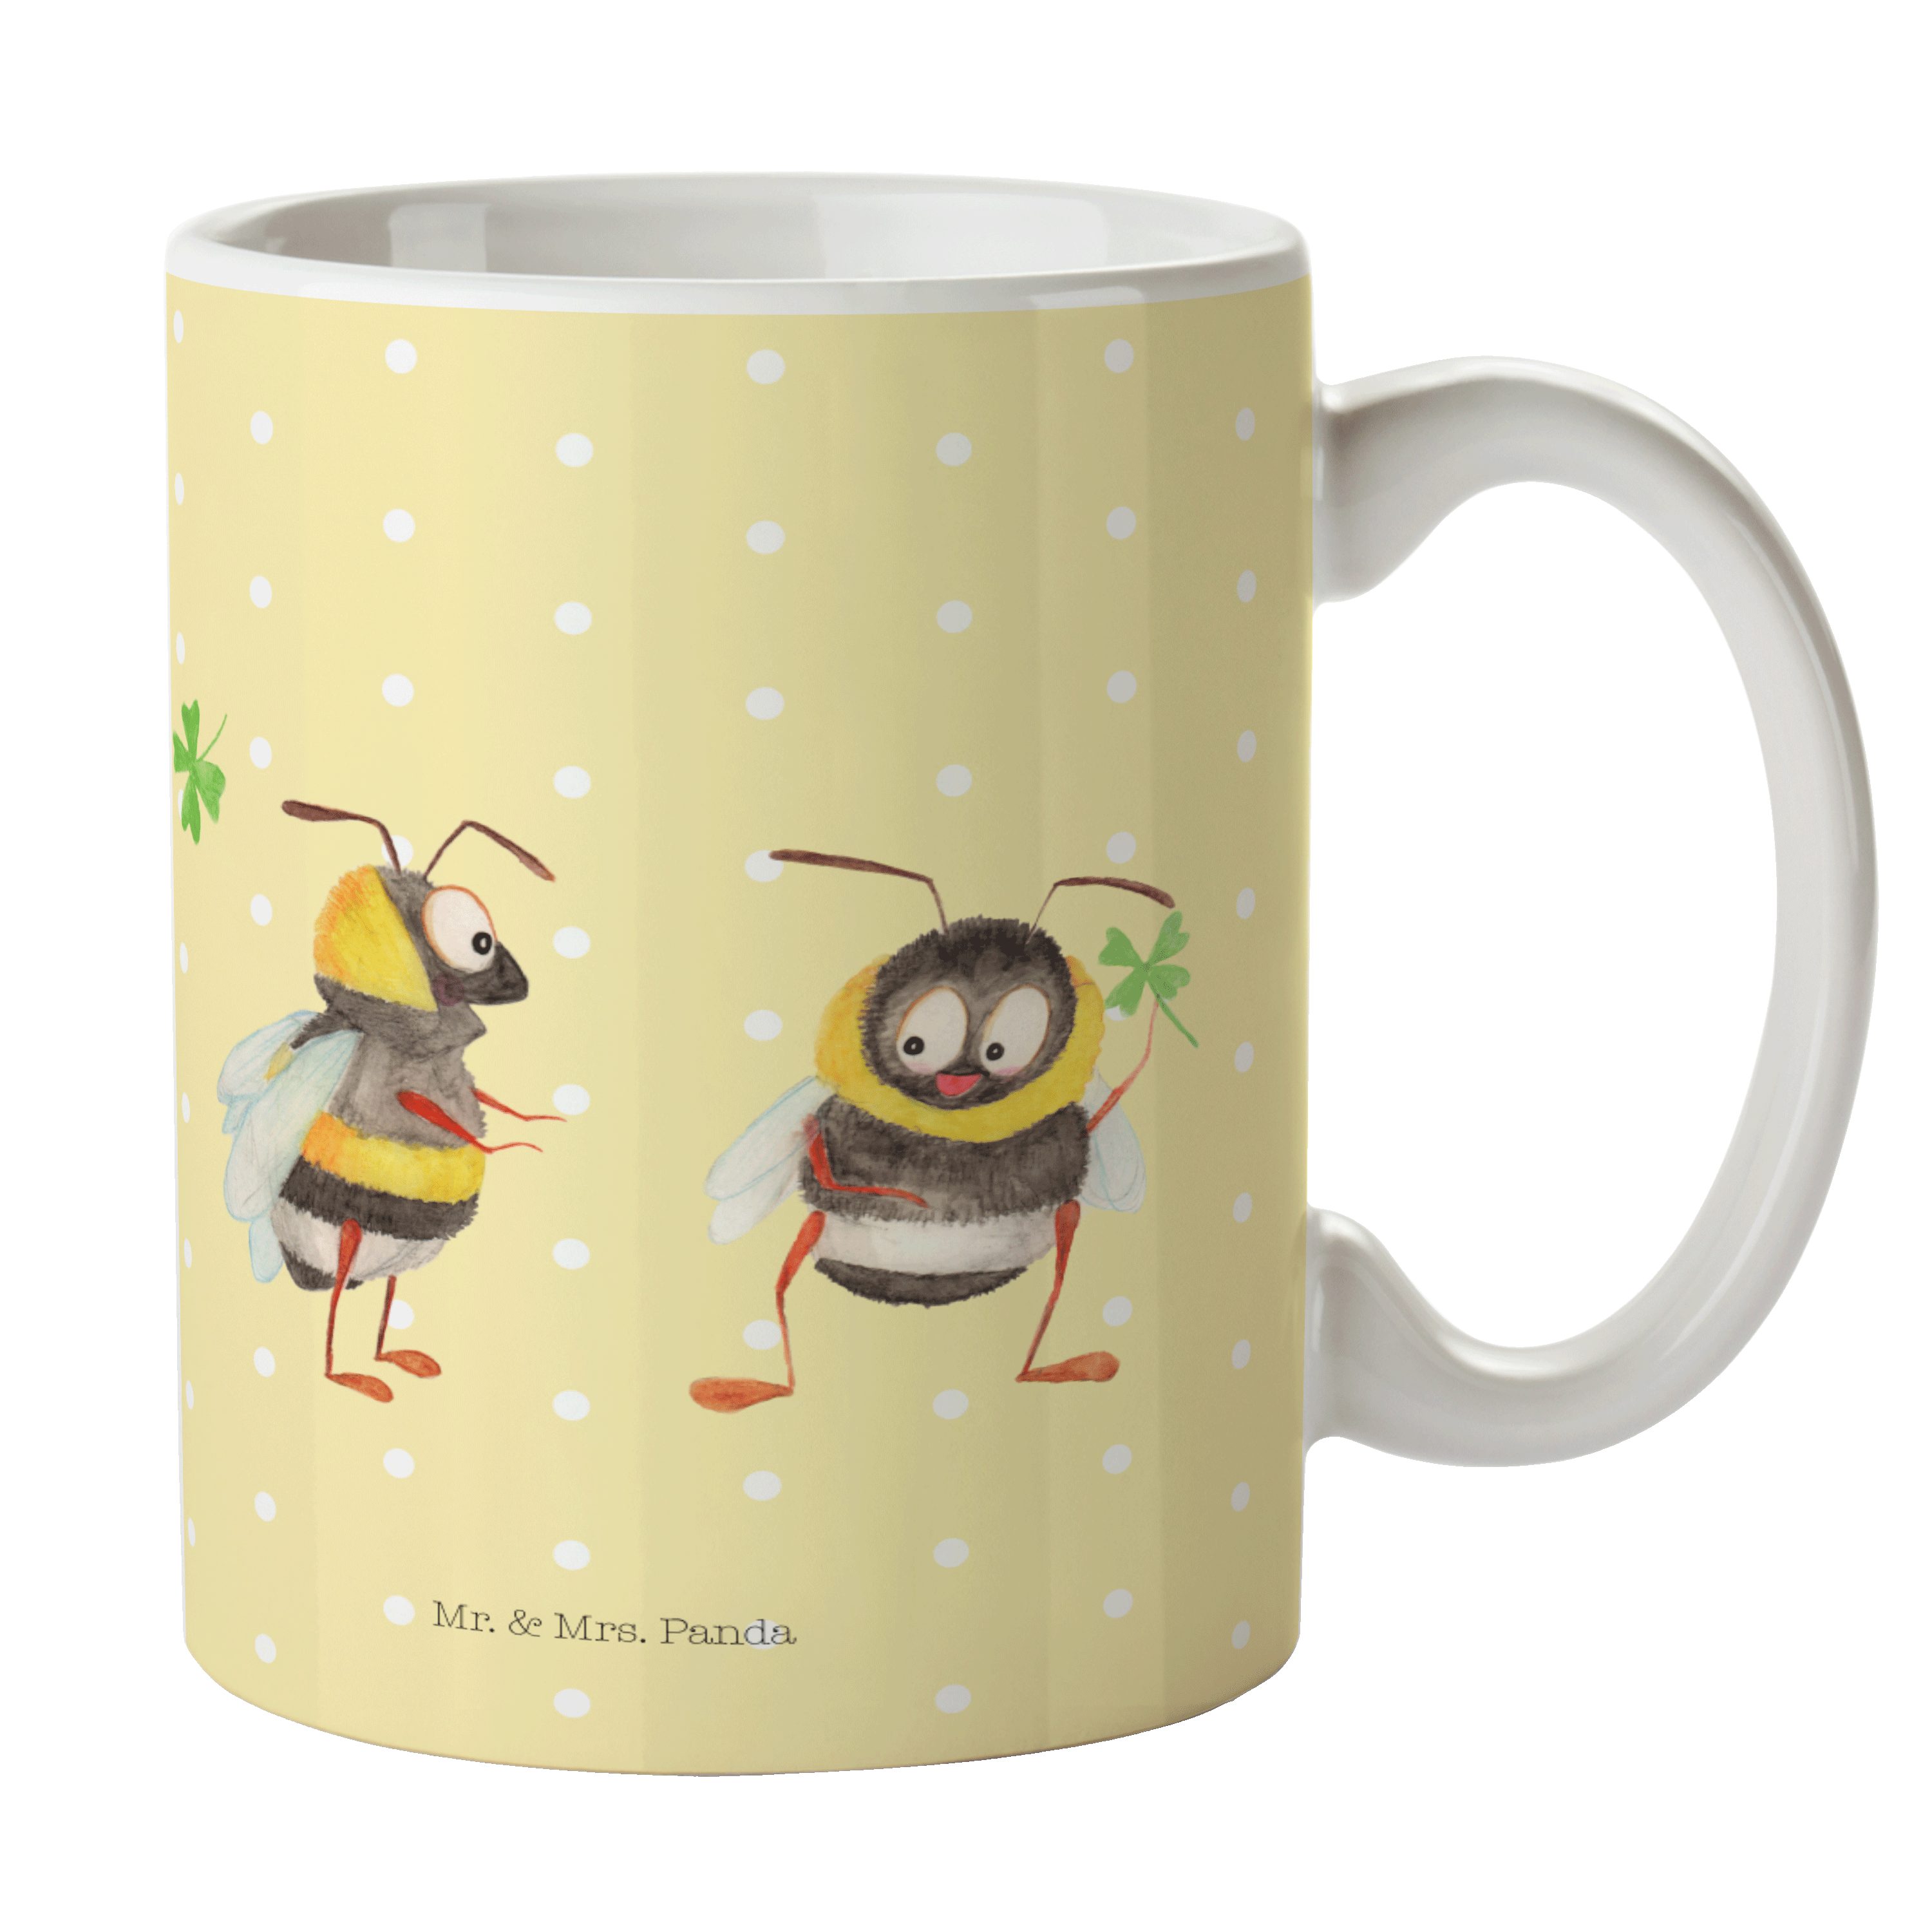 Mr. & Mrs. Panda Tasse Hummeln mit Kleeblatt - Gelb Pastell - Geschenk, Spruch positiv, Teet, Keramik